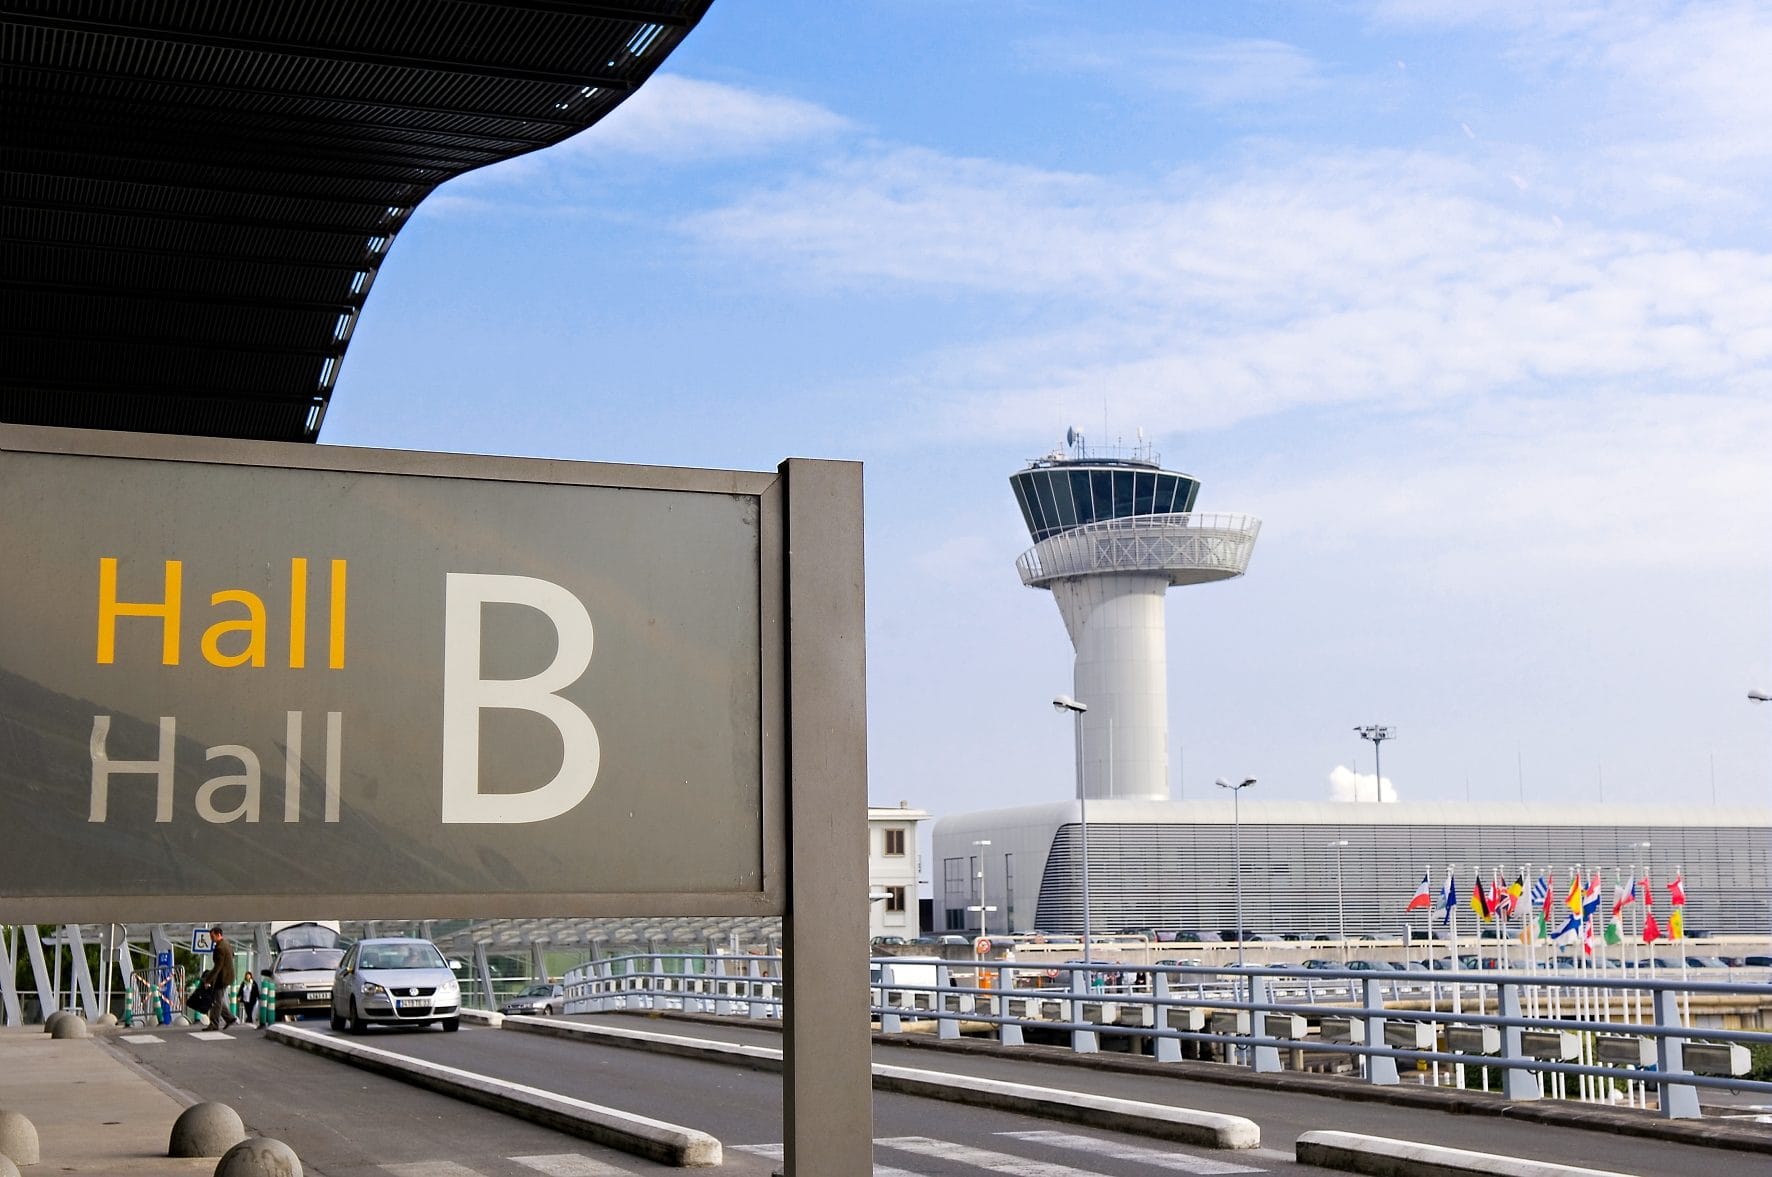 Aéroport de Bordeaux Mérignac : élus et riverains s’élèvent contre la suppression d’une piste